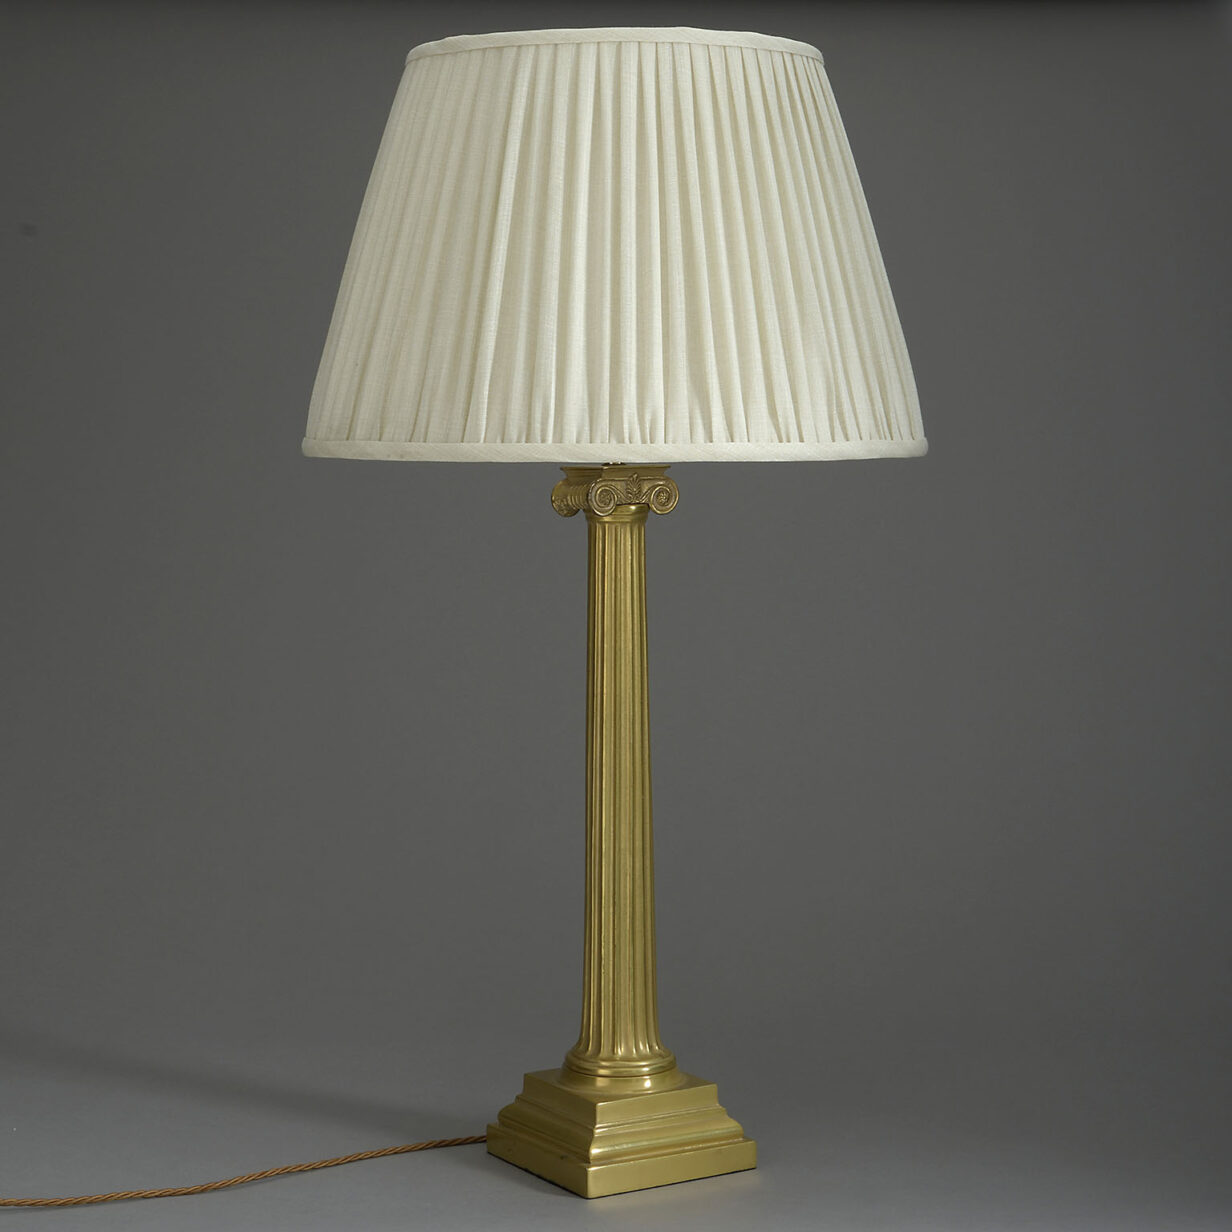 Brass ionic column lamp